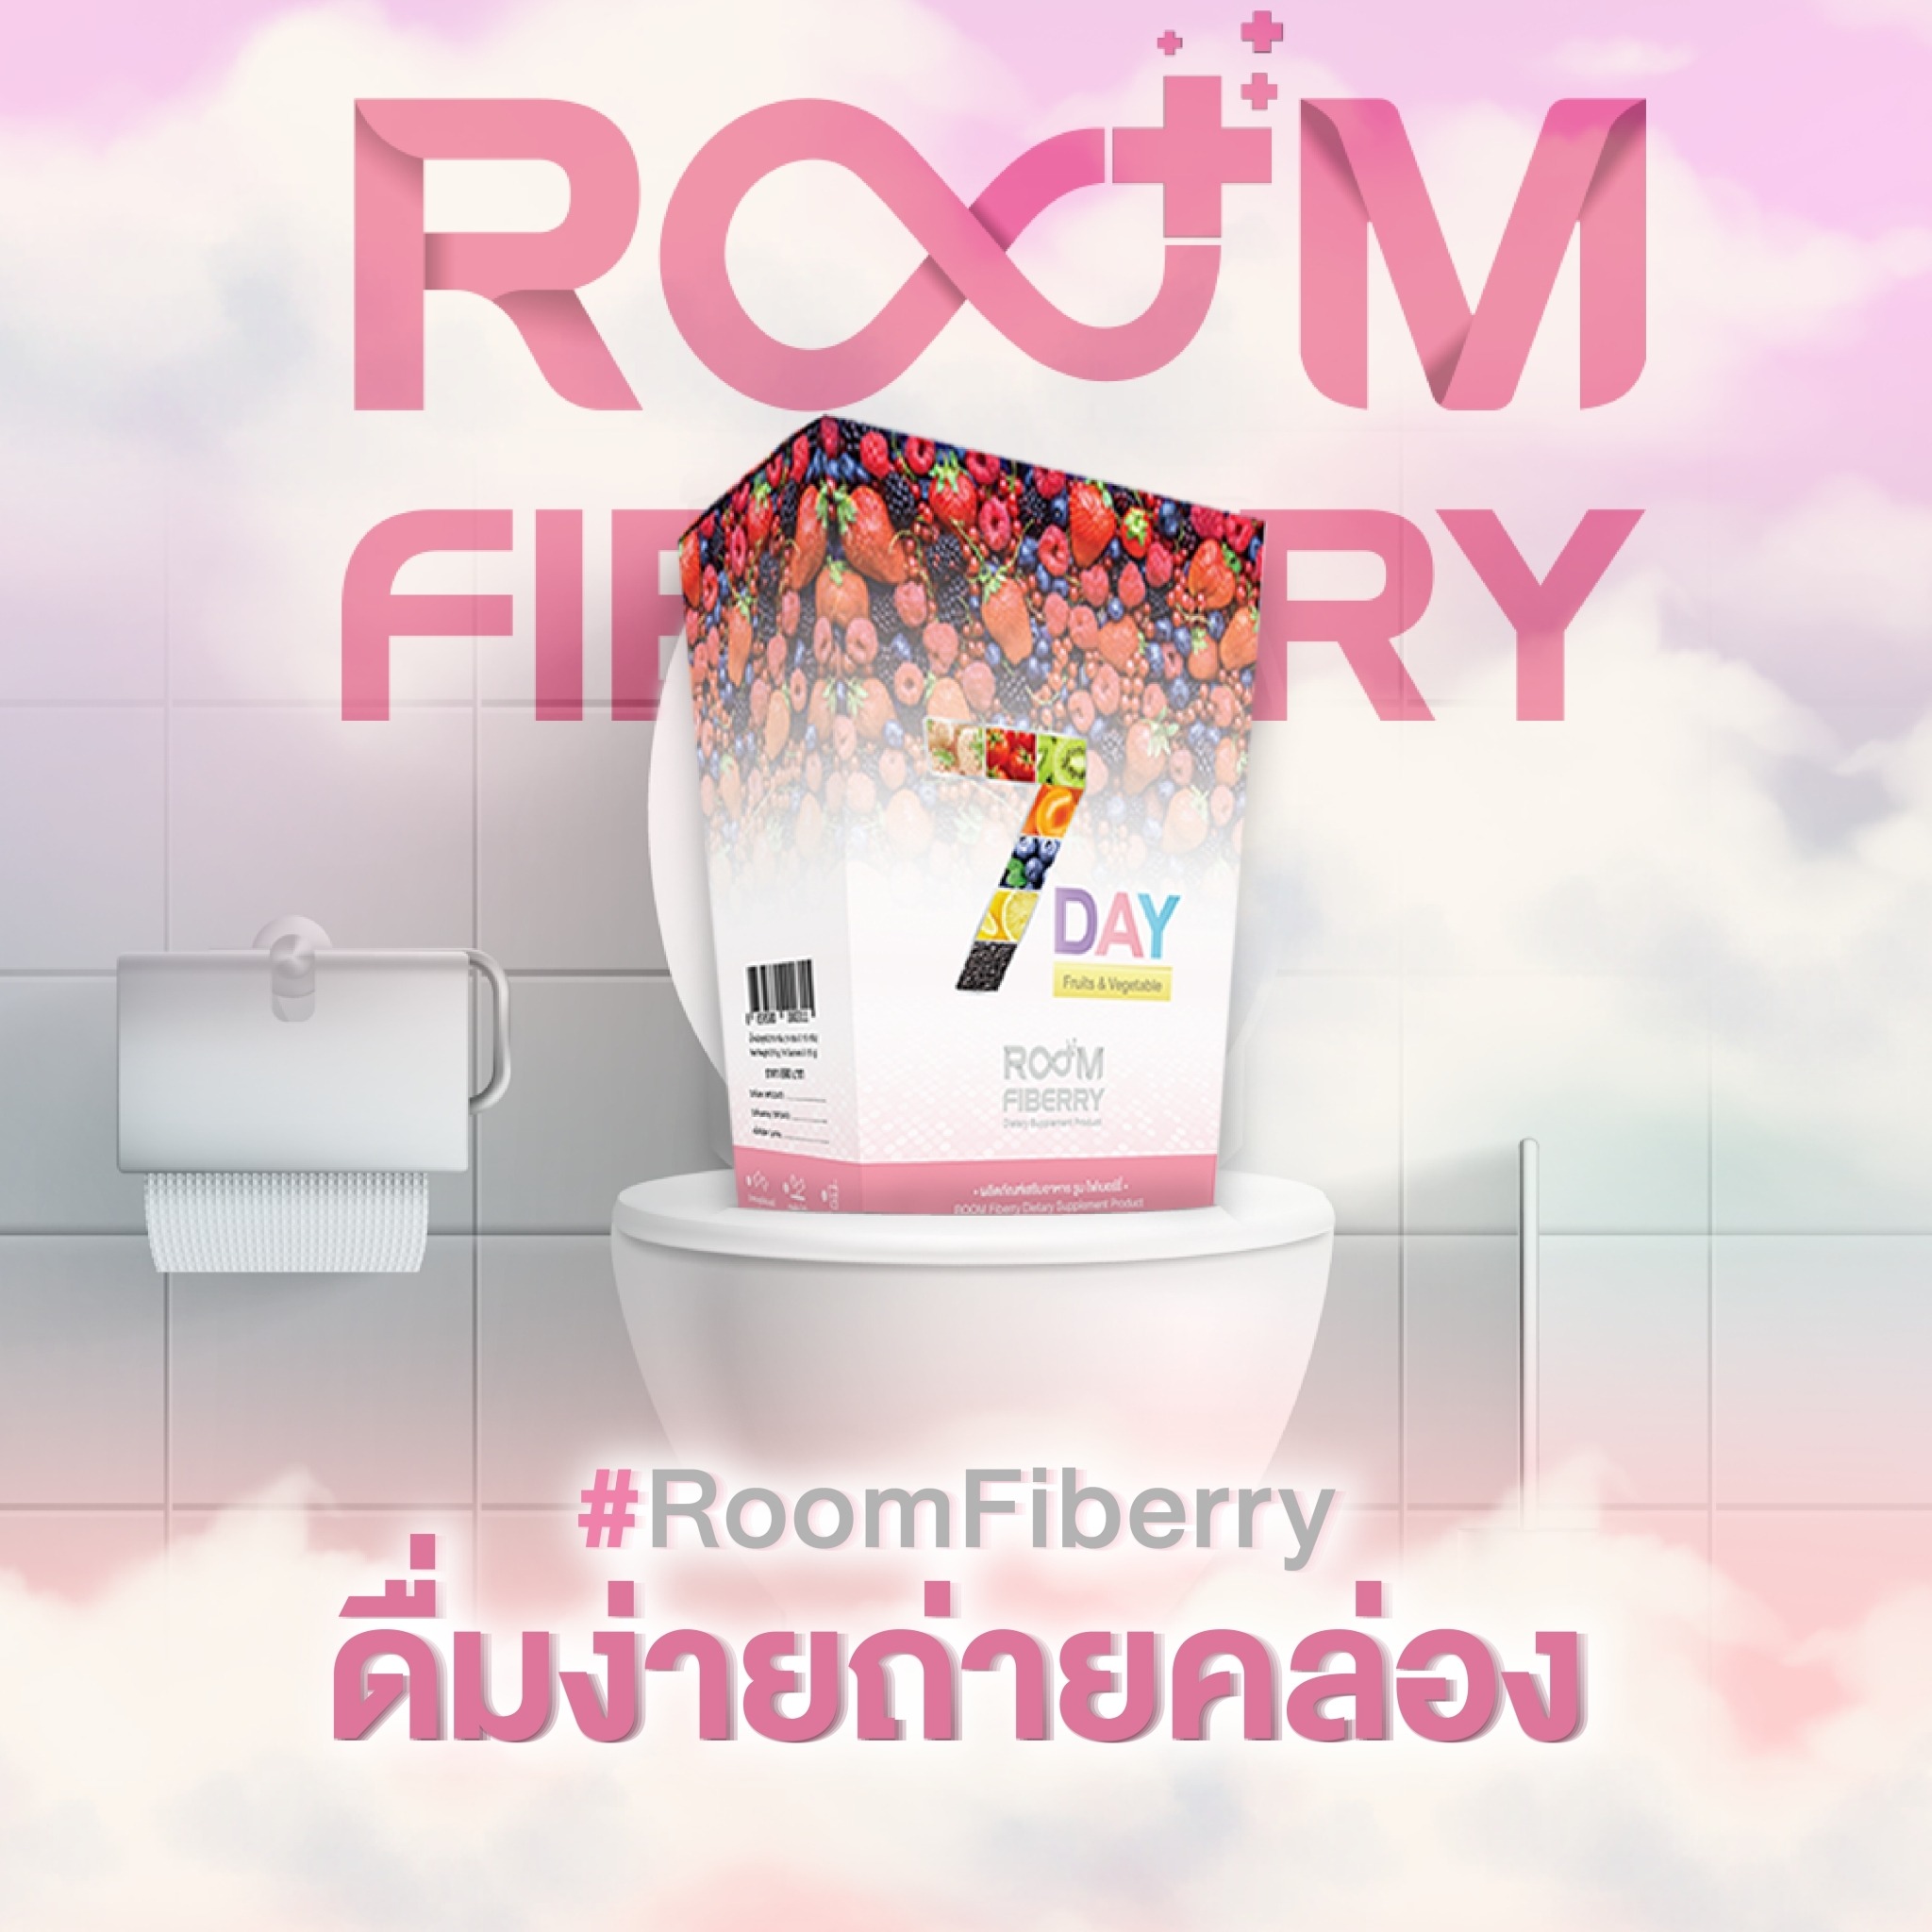 Room Fiberry ดื่มง่าย ถ่ายคล่อง